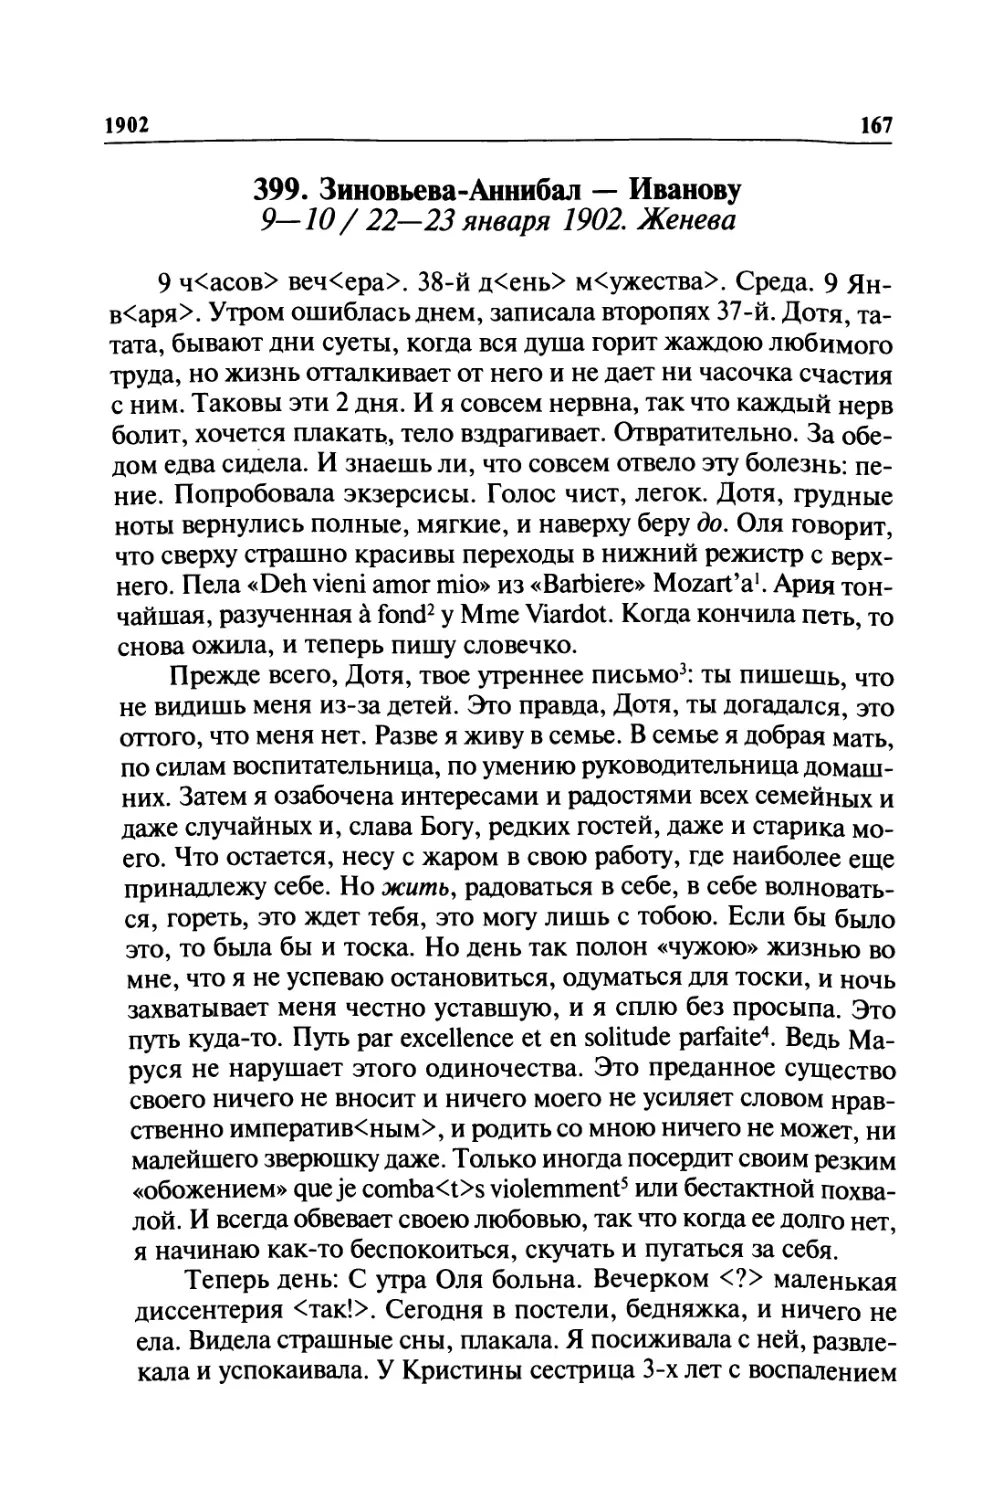 399. Зиновьева-Аннибал — Иванову. 9—10/ 22—23 января 1902. Женева